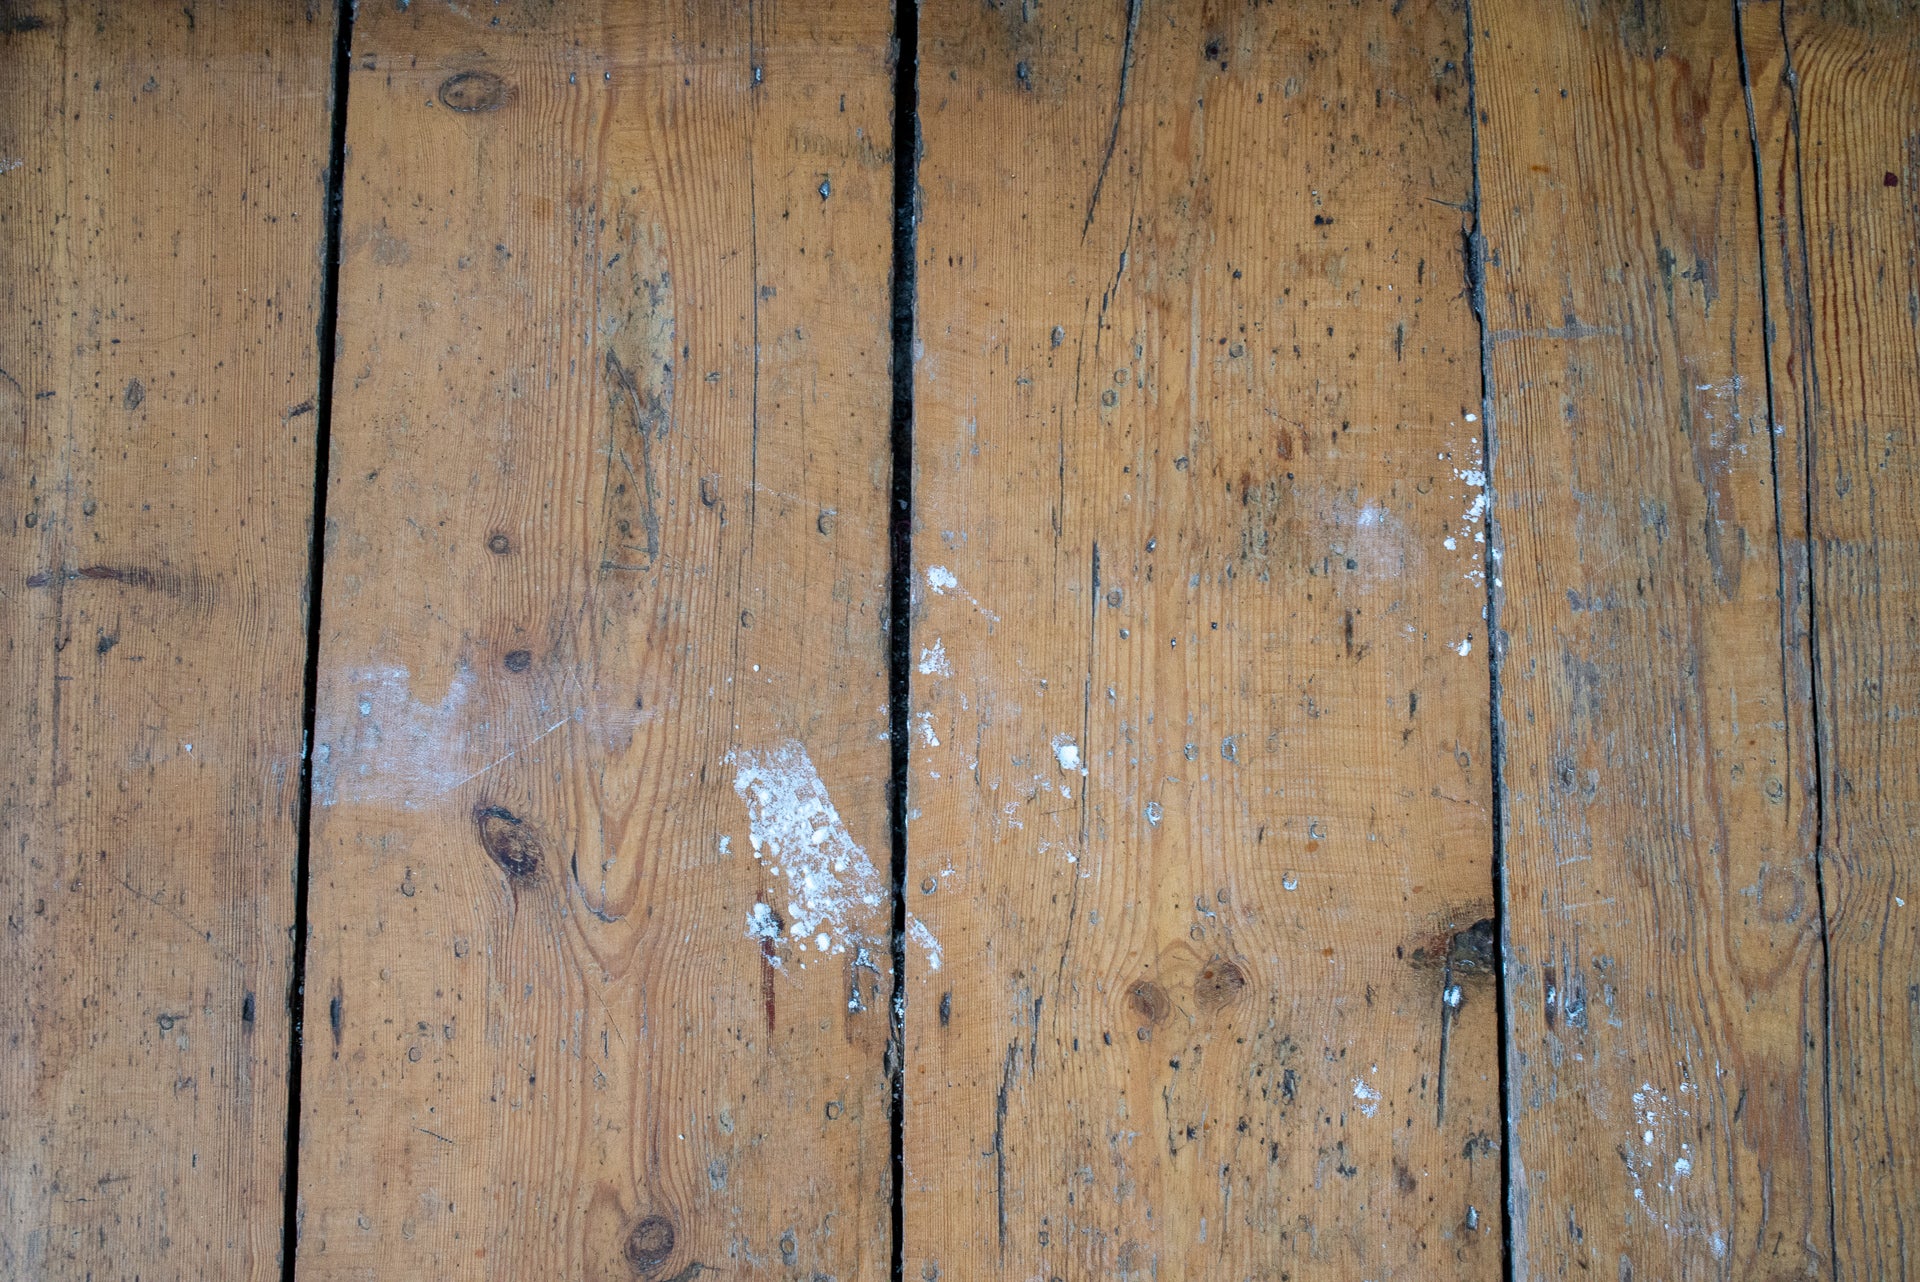 Dirty wooden floor planks with debris.